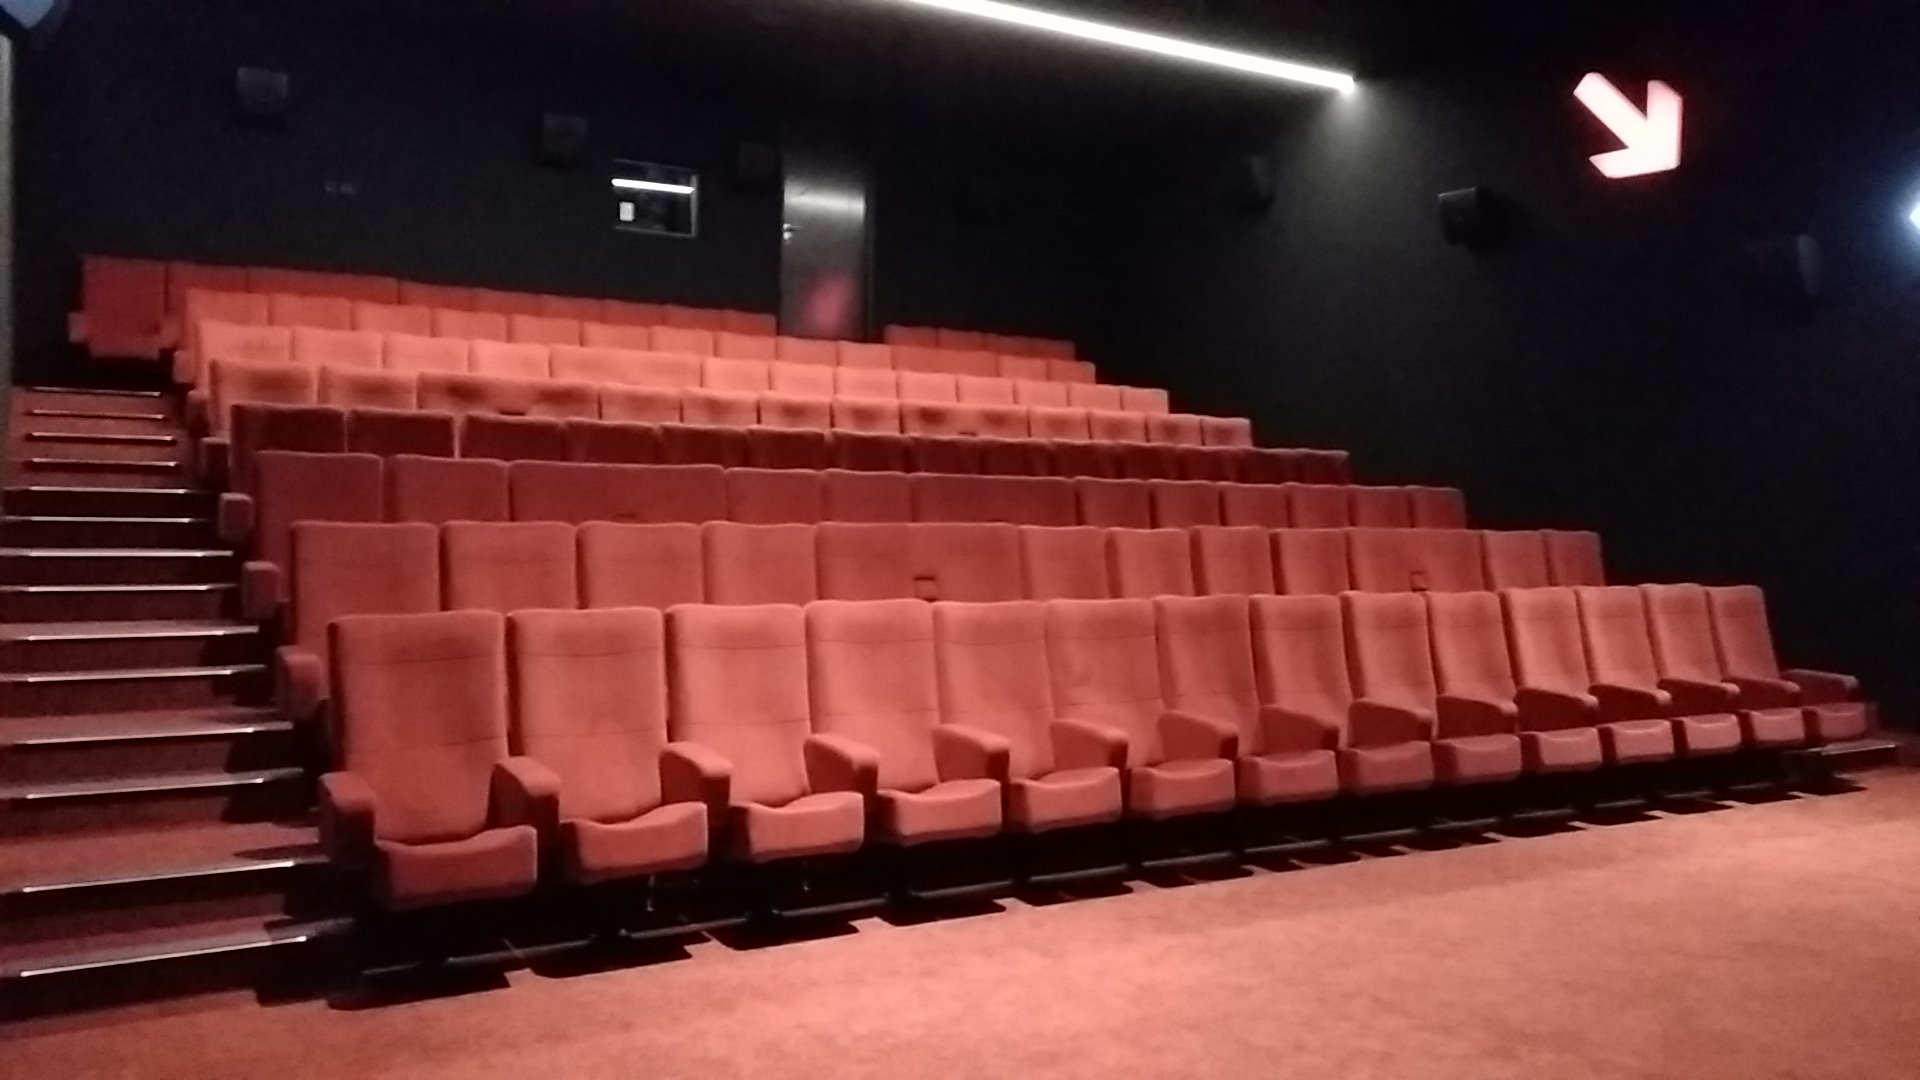 Kleslo - fauteuil Inertie - Leader de fabrication de fauteuils cinéma, théâtre ... Cinéma confluence sablé sur Sarthe v2